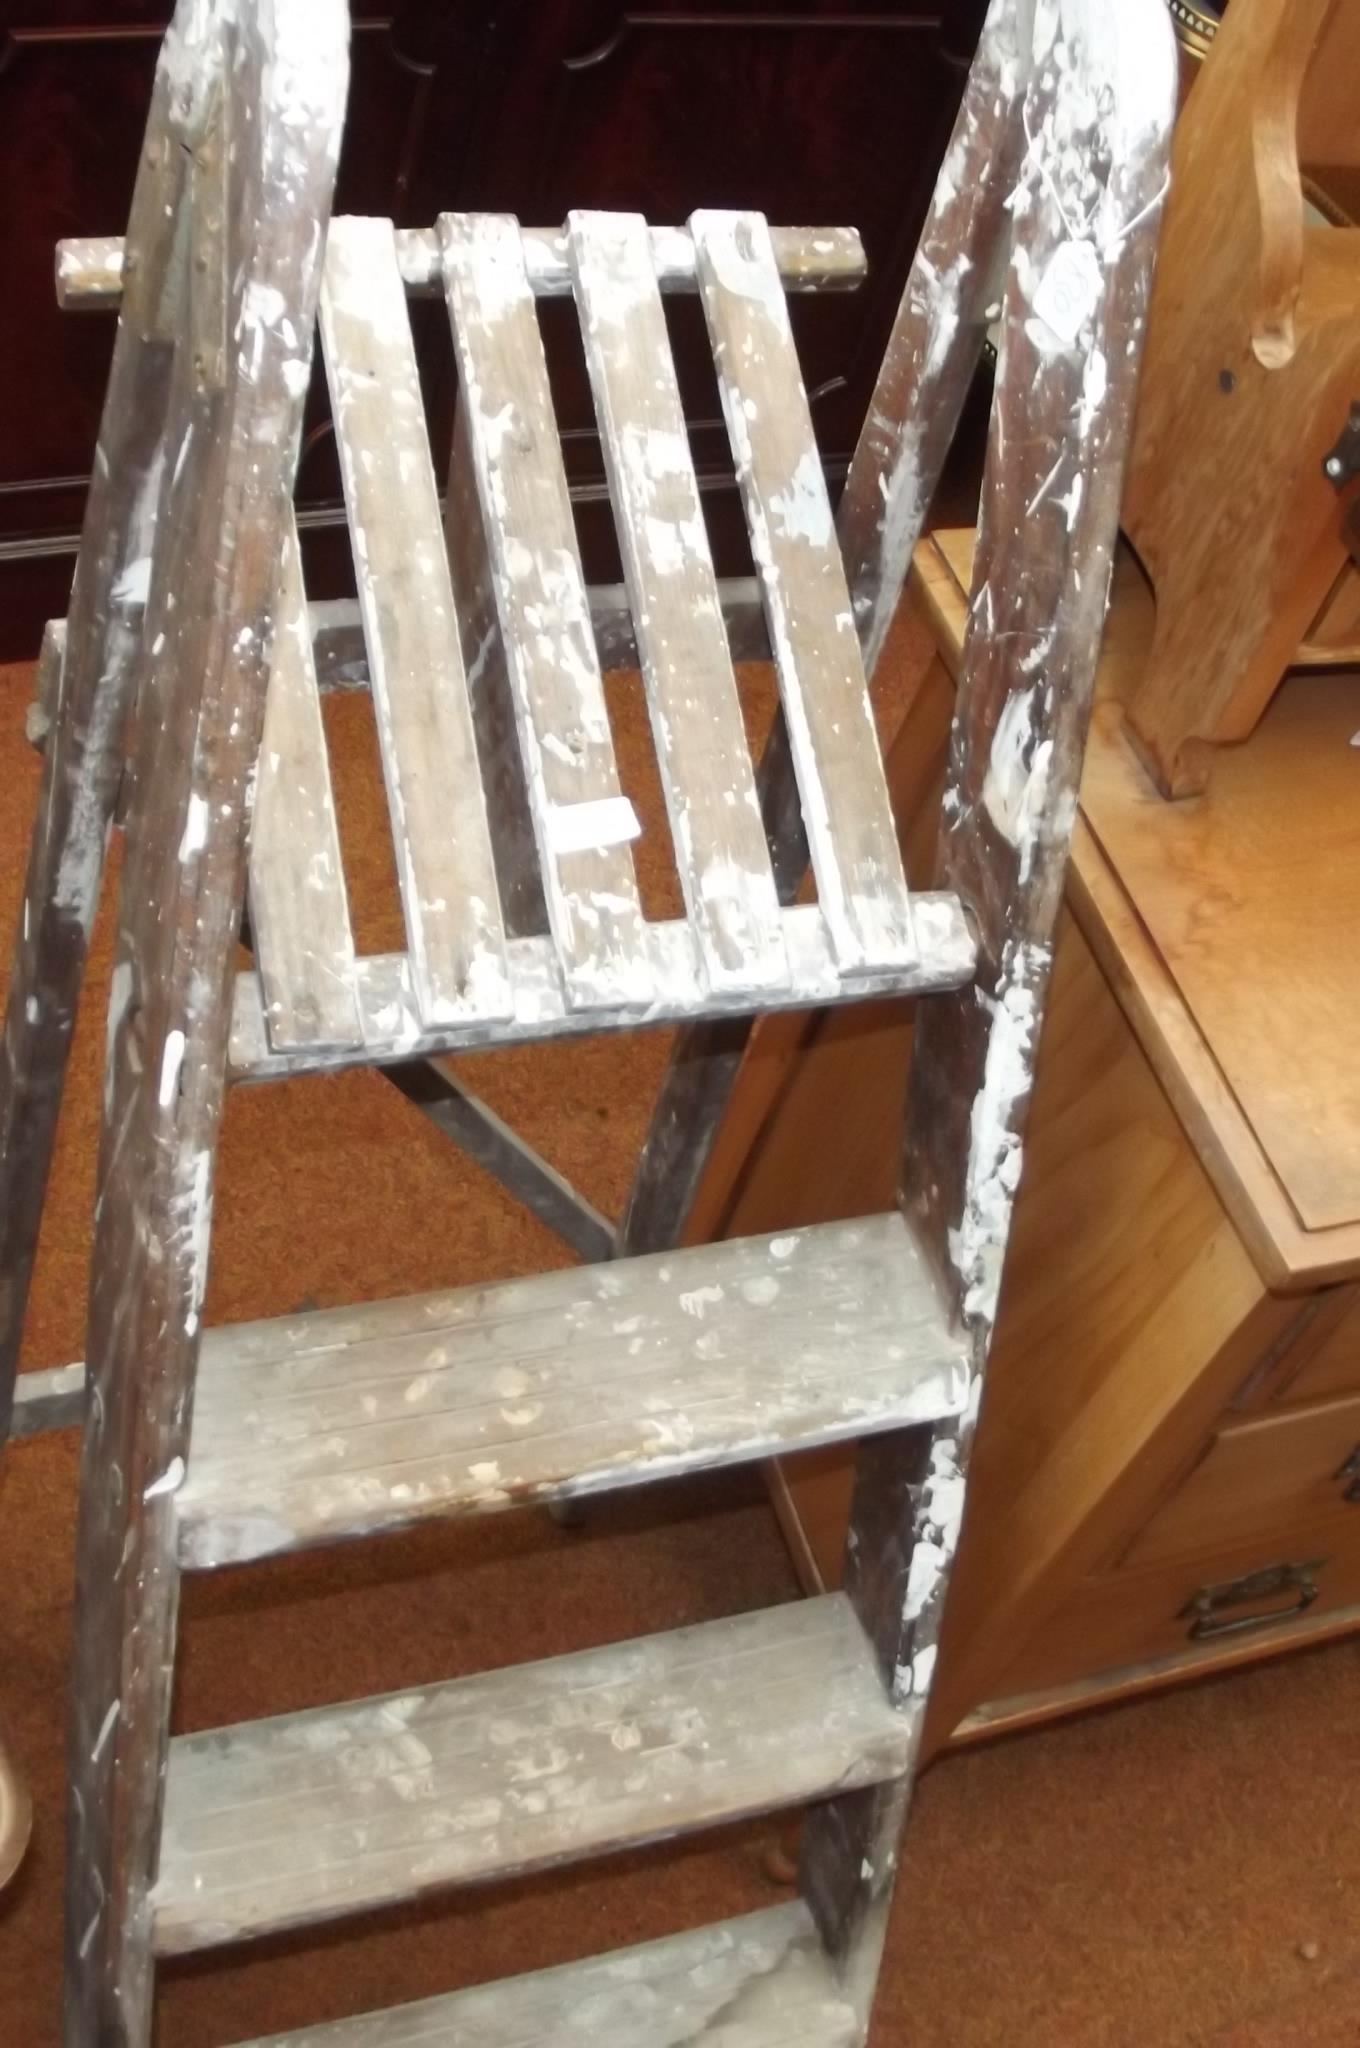 Vintage step ladders